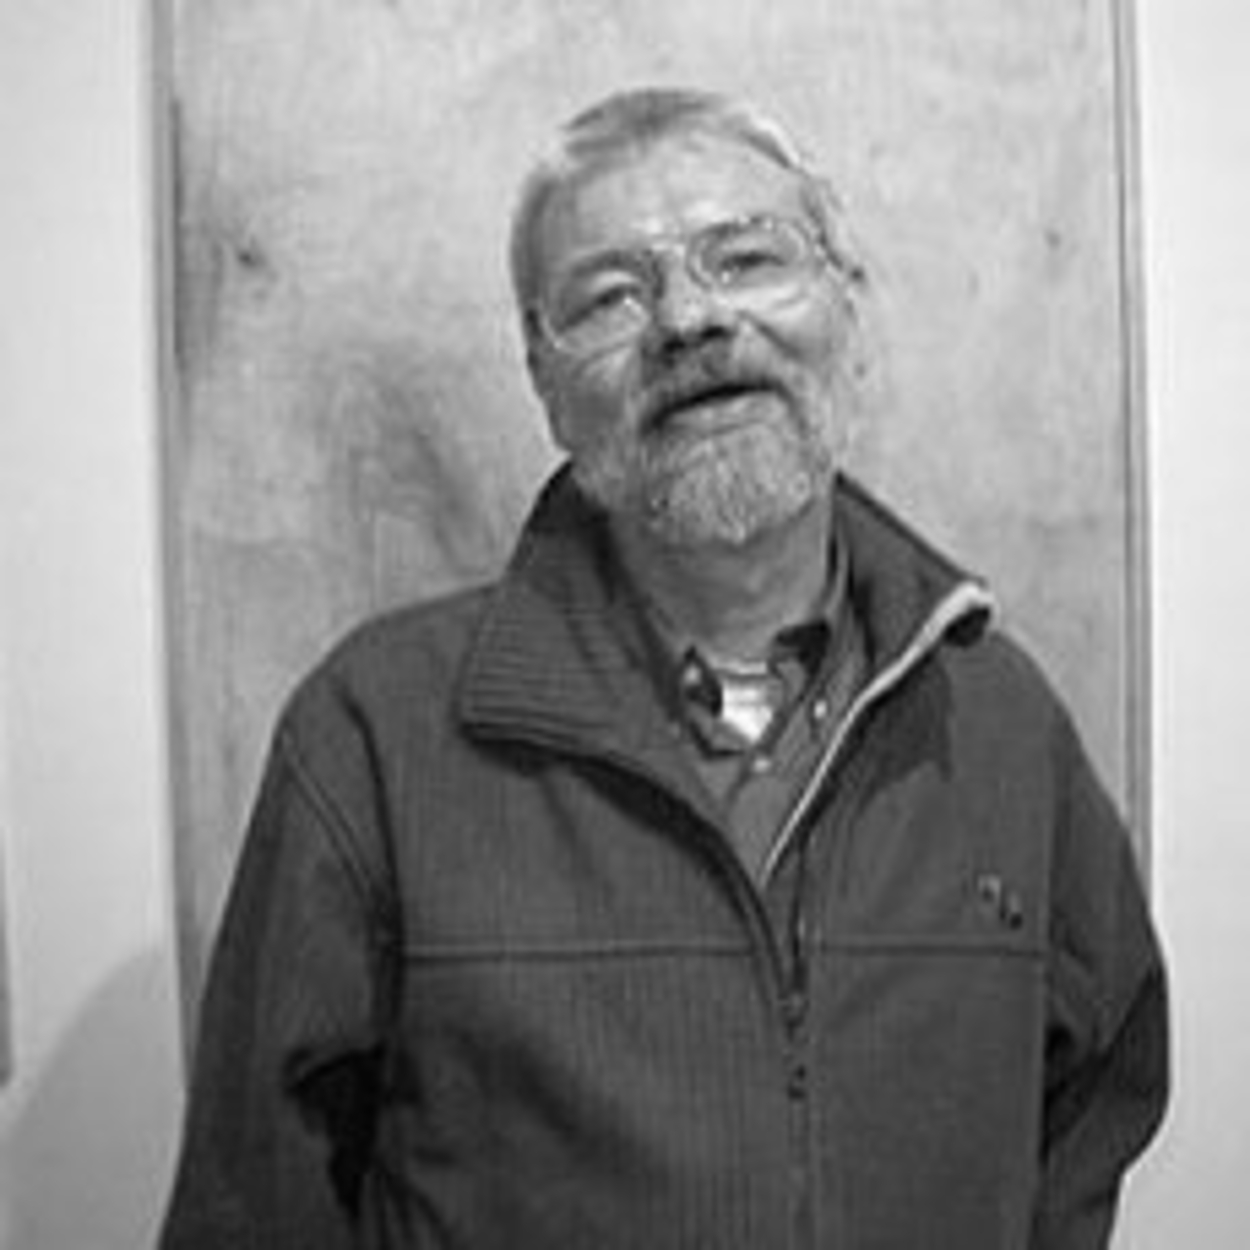 Mikołaj Smoczynski - March 22, 1955 - January 2, 2009